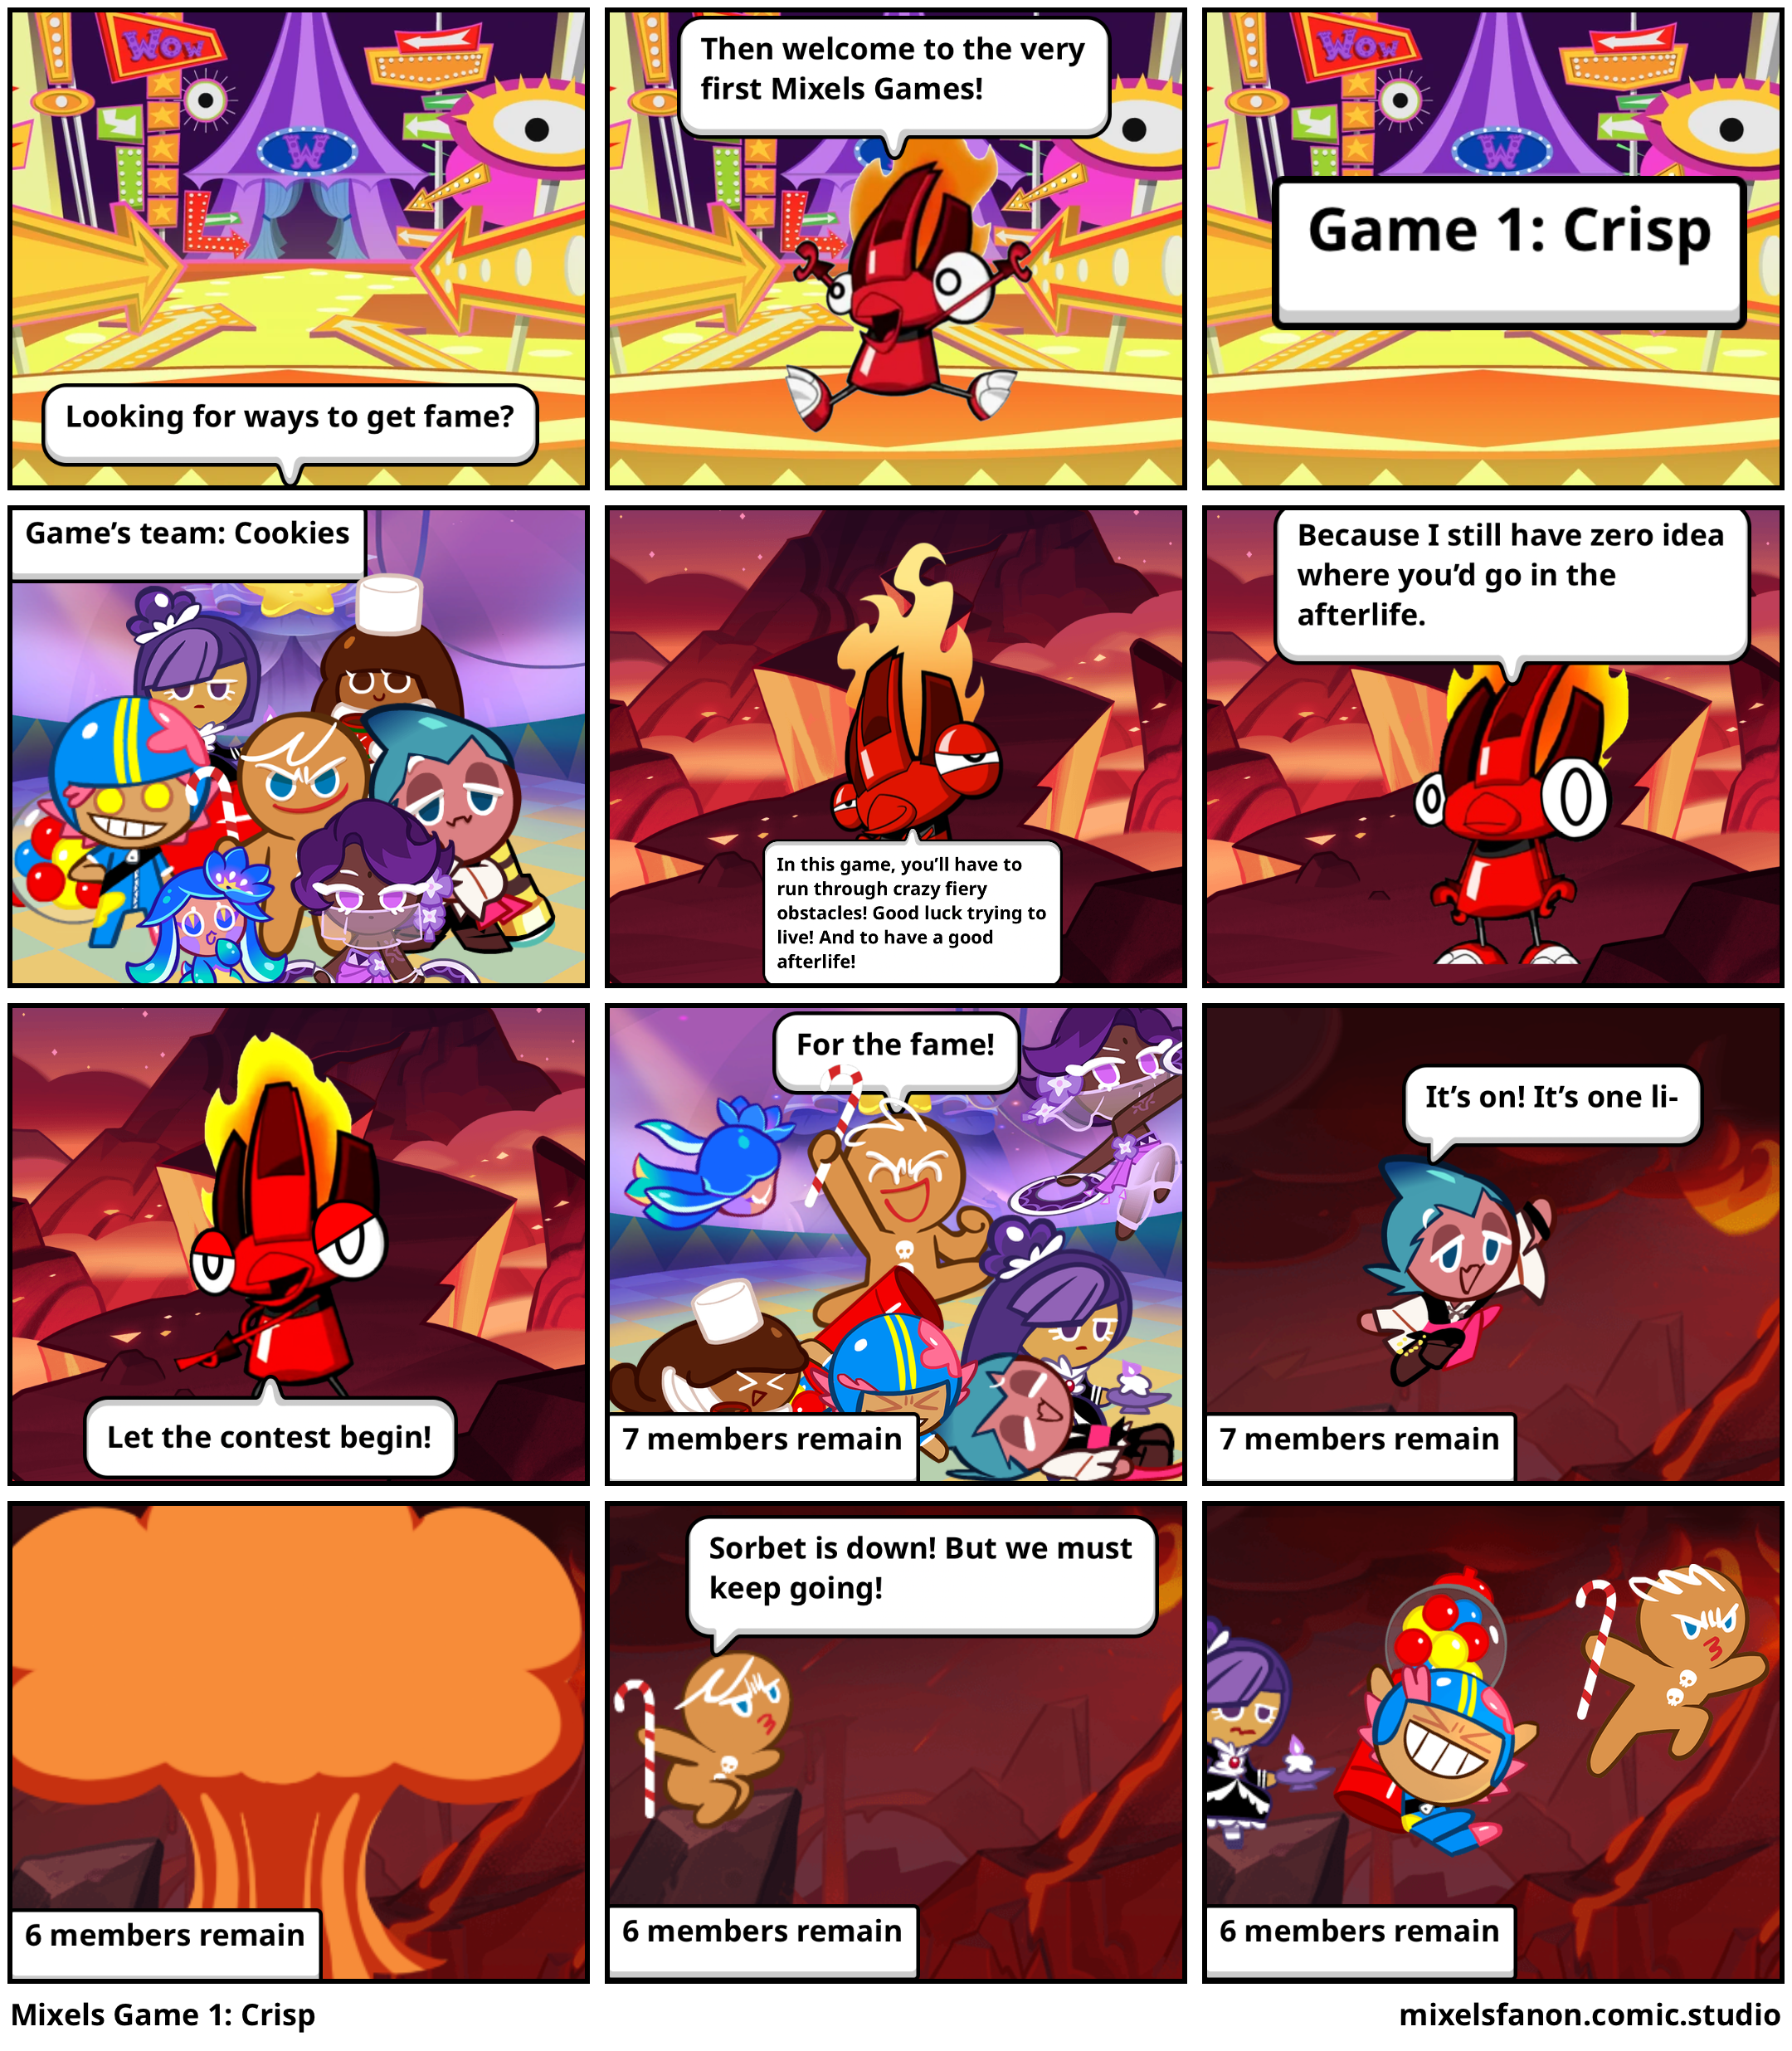 Mixels Game 1: Crisp